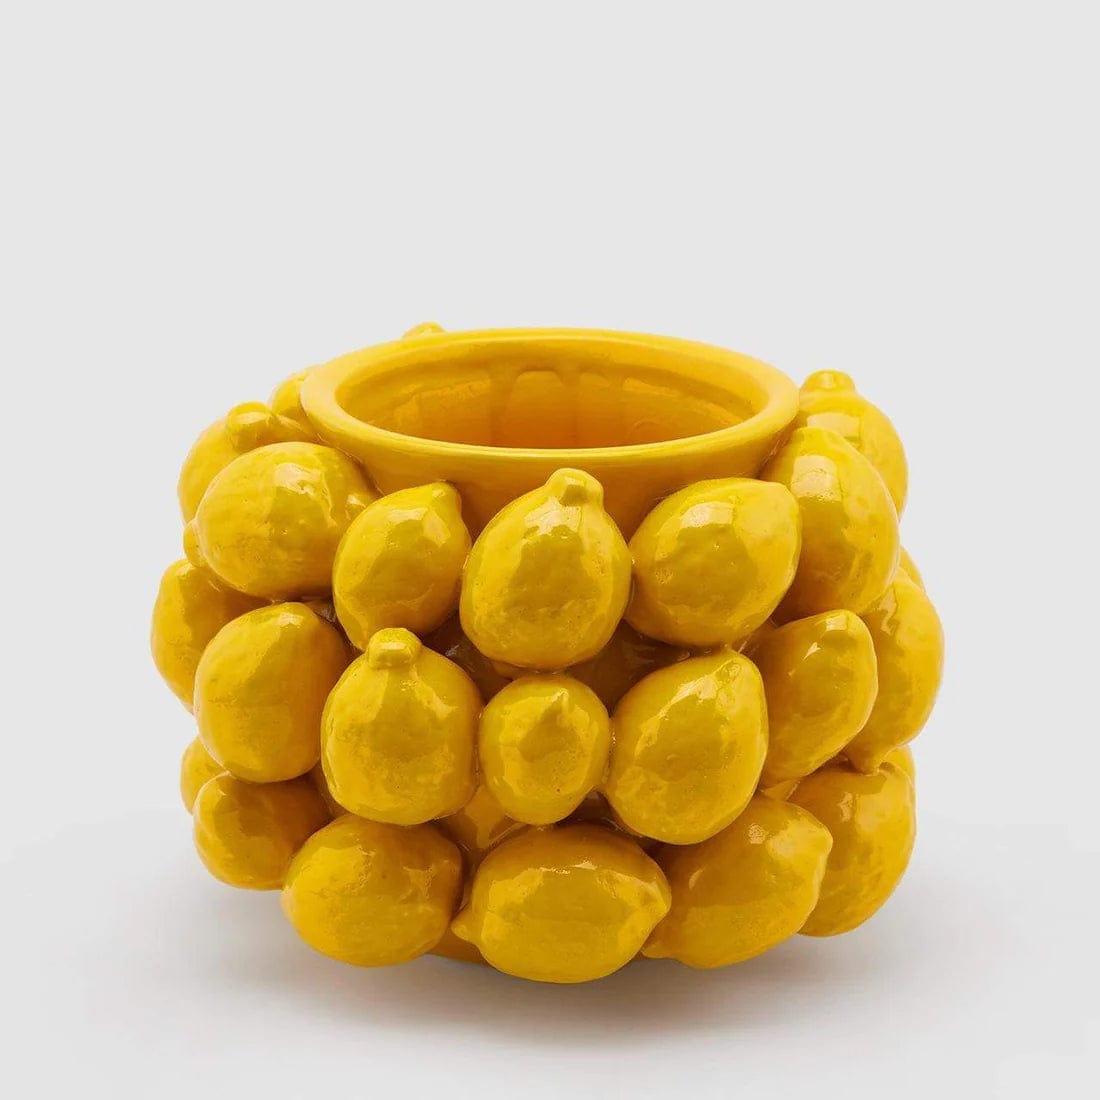 Zitronenvase mit gelben zitronen besetzt